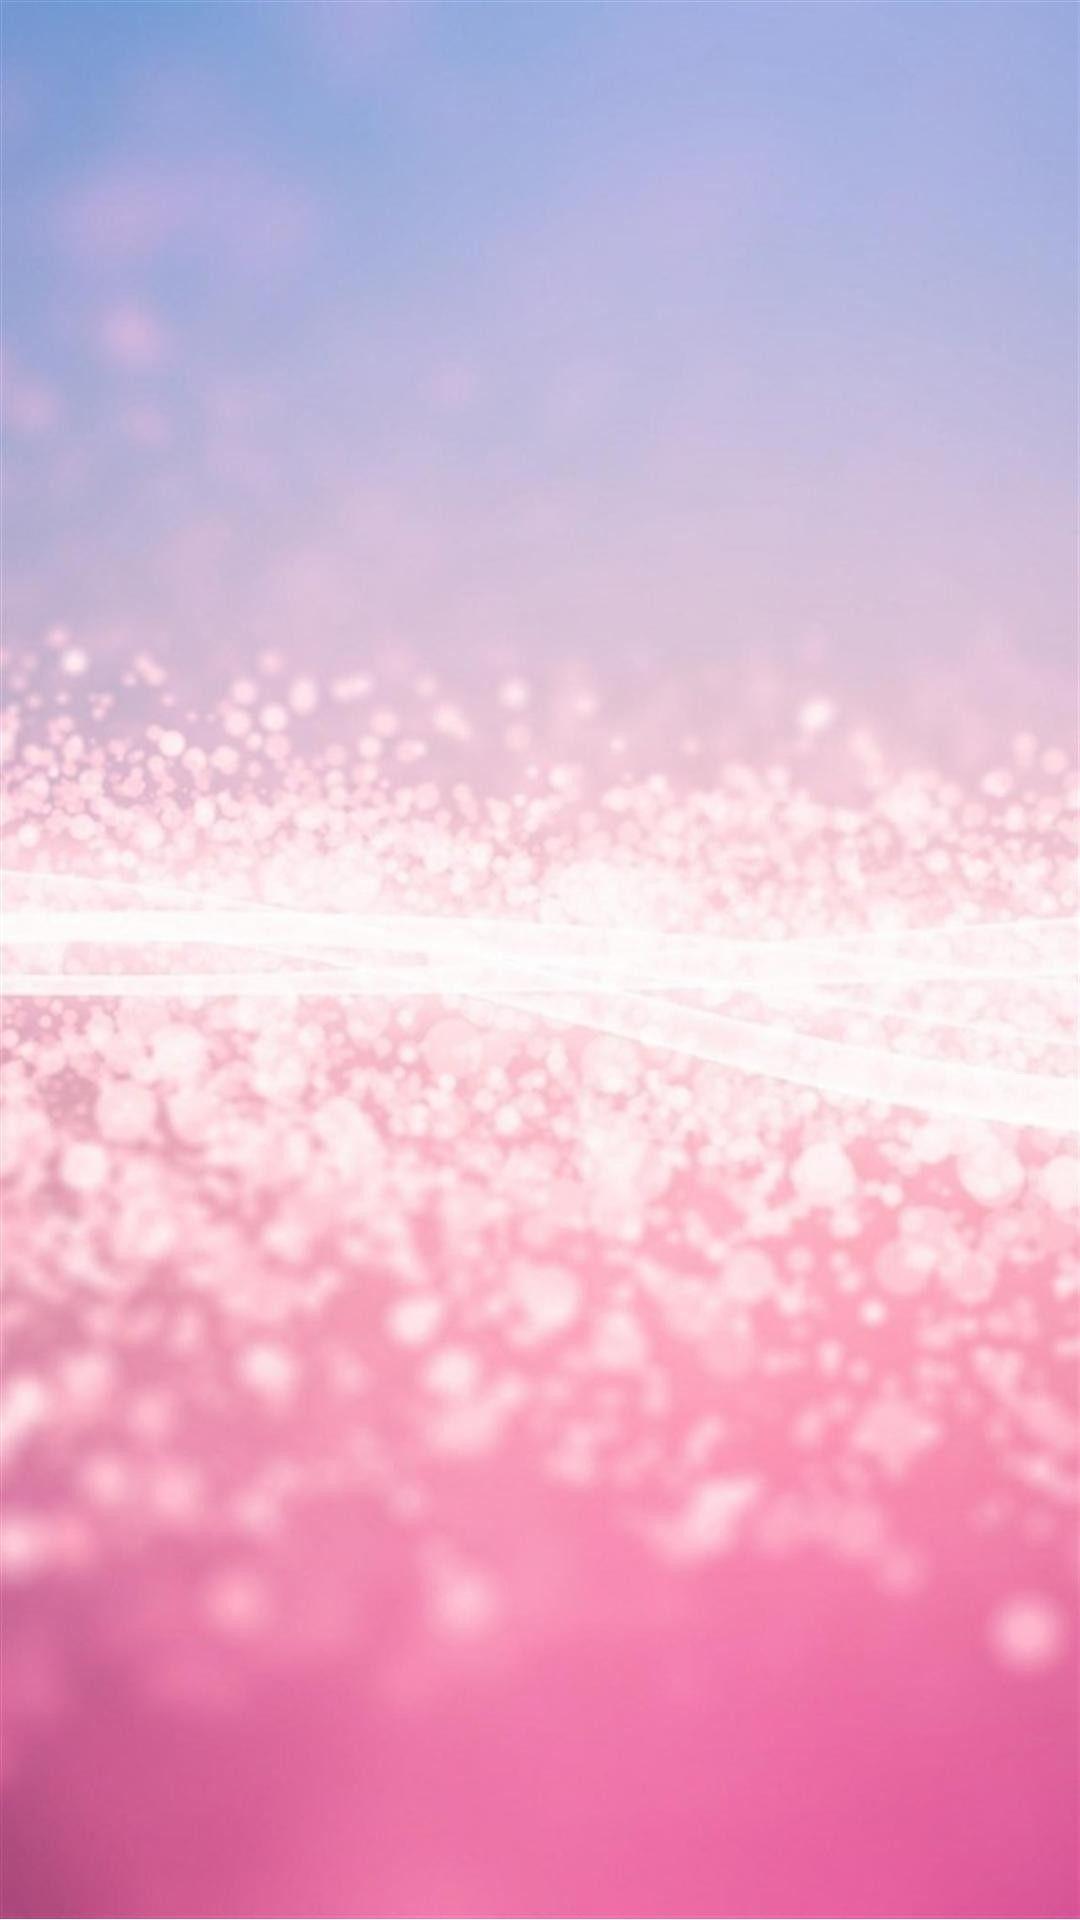 Pink Glitter Stardust Smartphone Wallpaper HD ⋆ GetPhotos